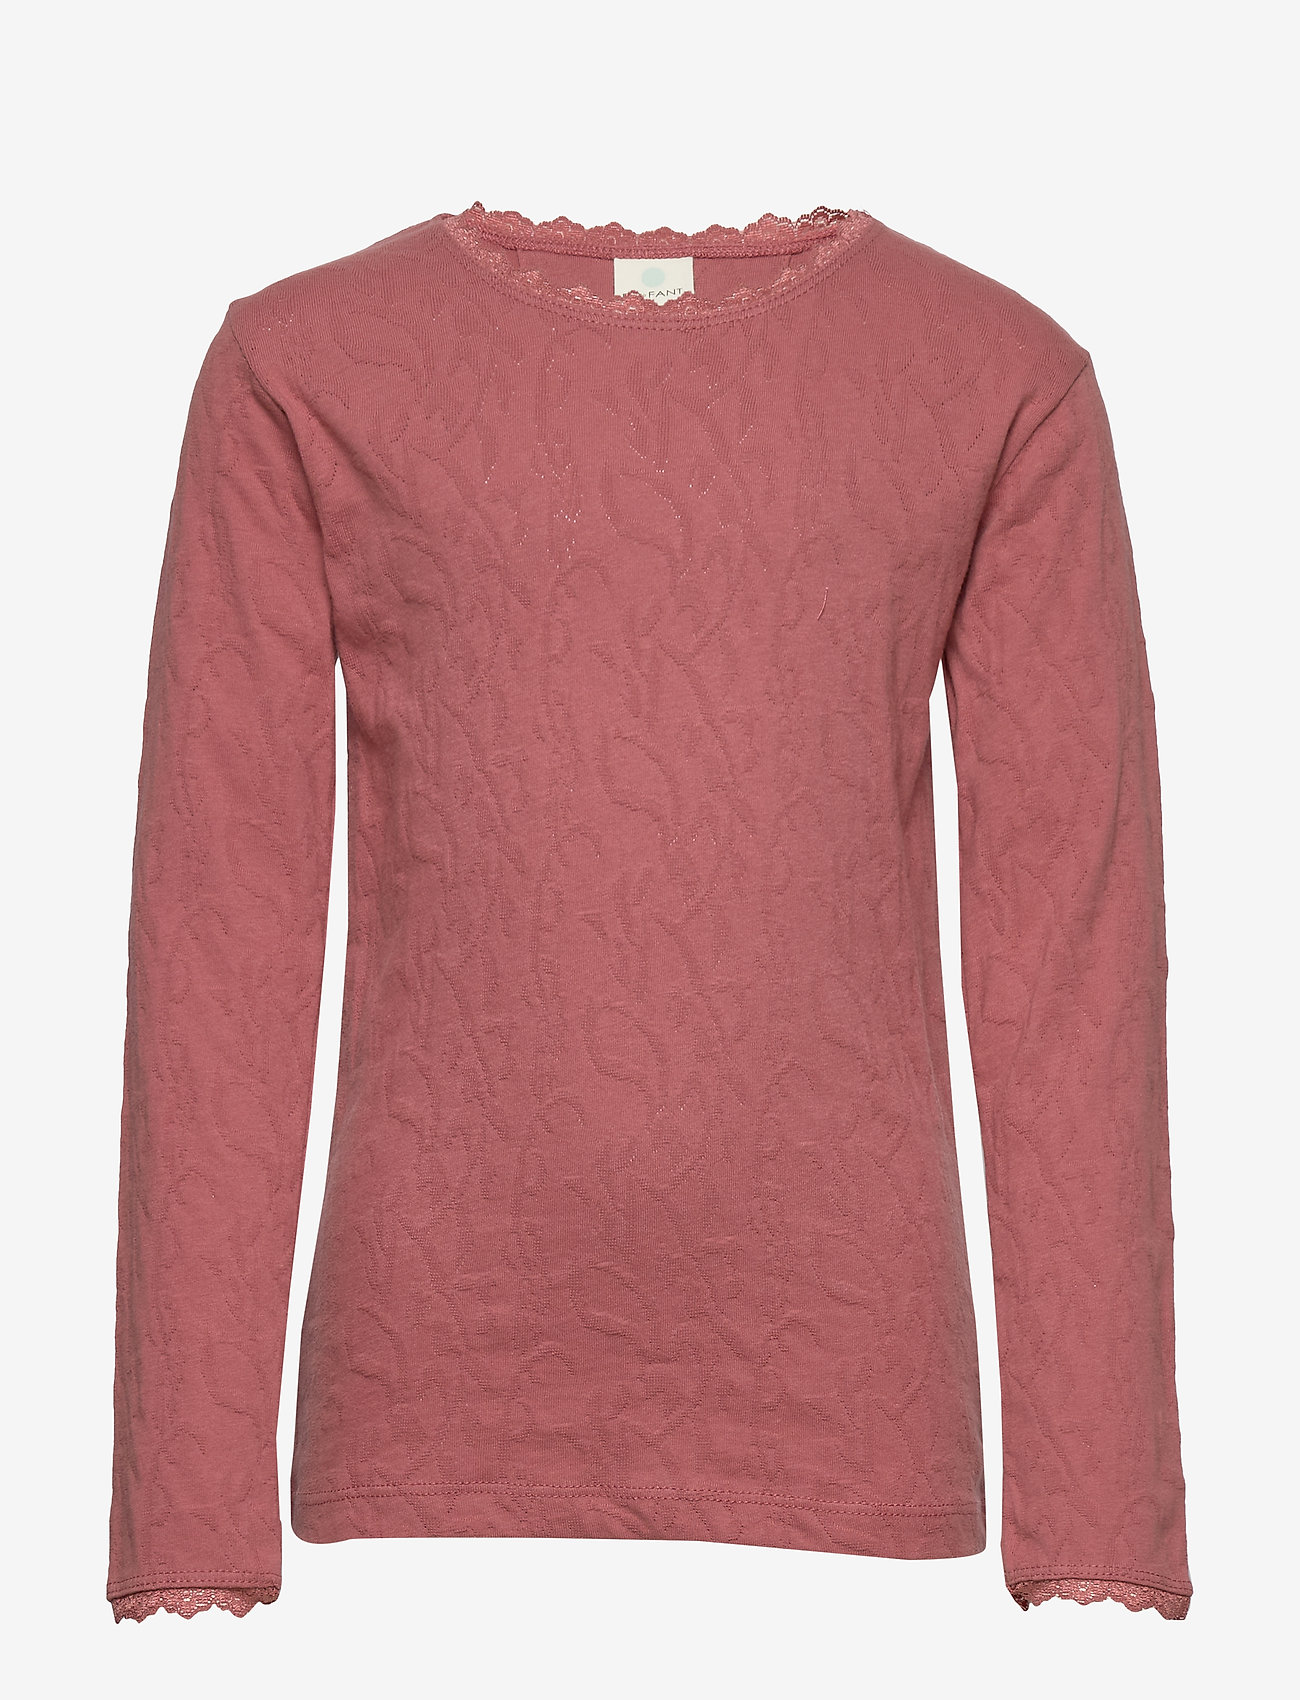 En Fant - Horizon LS Top - langærmede t-shirts - withered rose - 0